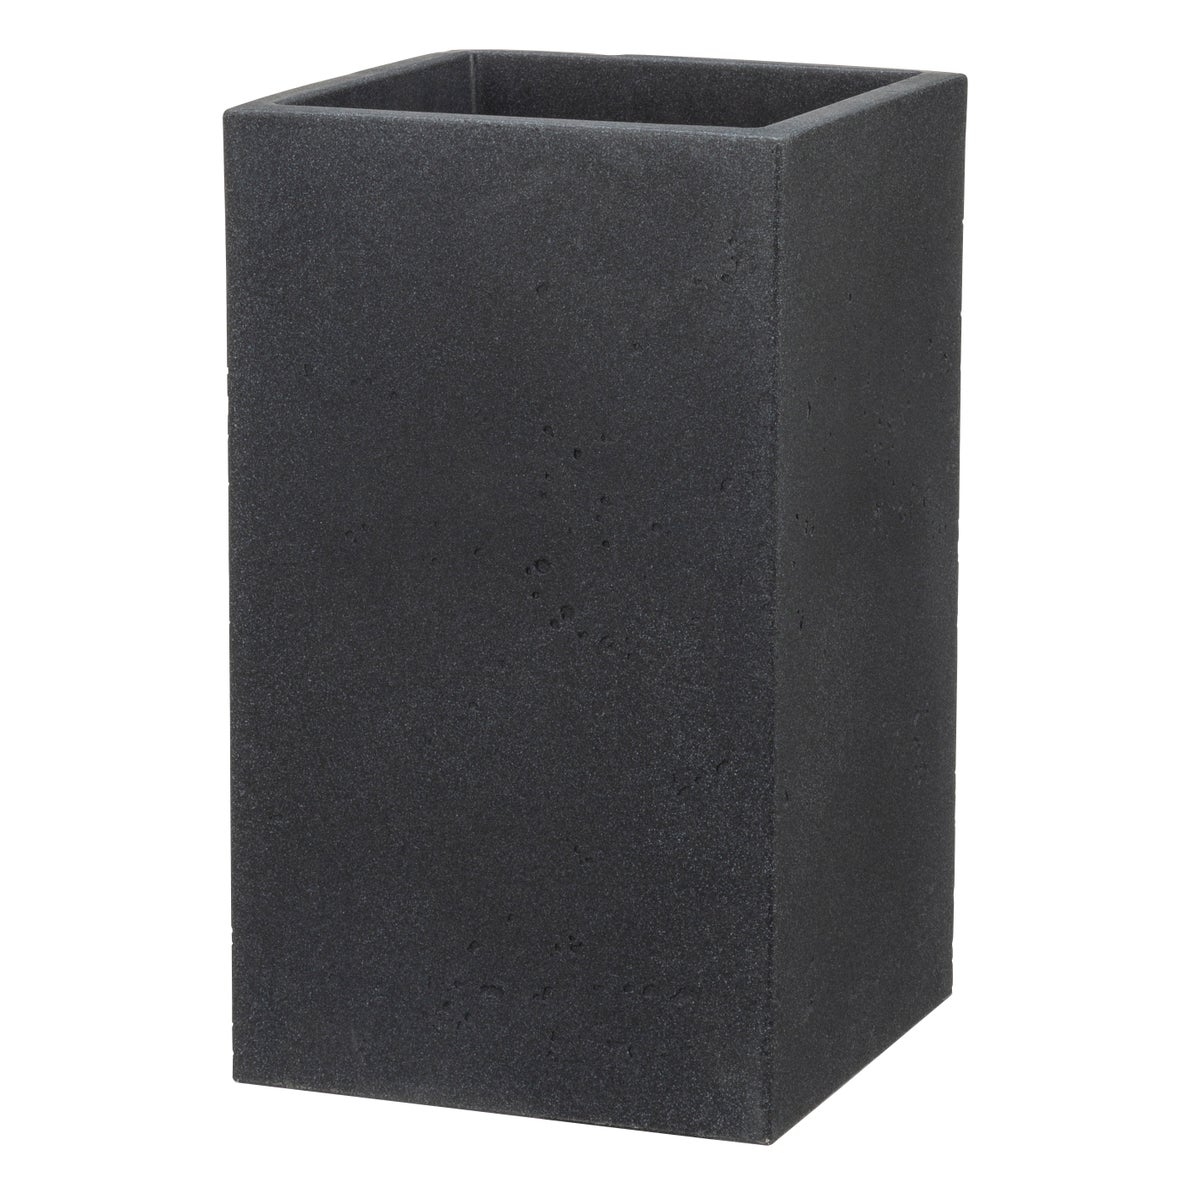 Scheurich C-Cube High 48, Hochgefäß/Blumentopf/Pflanzkübel, quadratisch,  aus Kunststoff Farbe: Stony Black, 28 cm Durchmesser, 47,7 cm hoch, 11 l Vol.